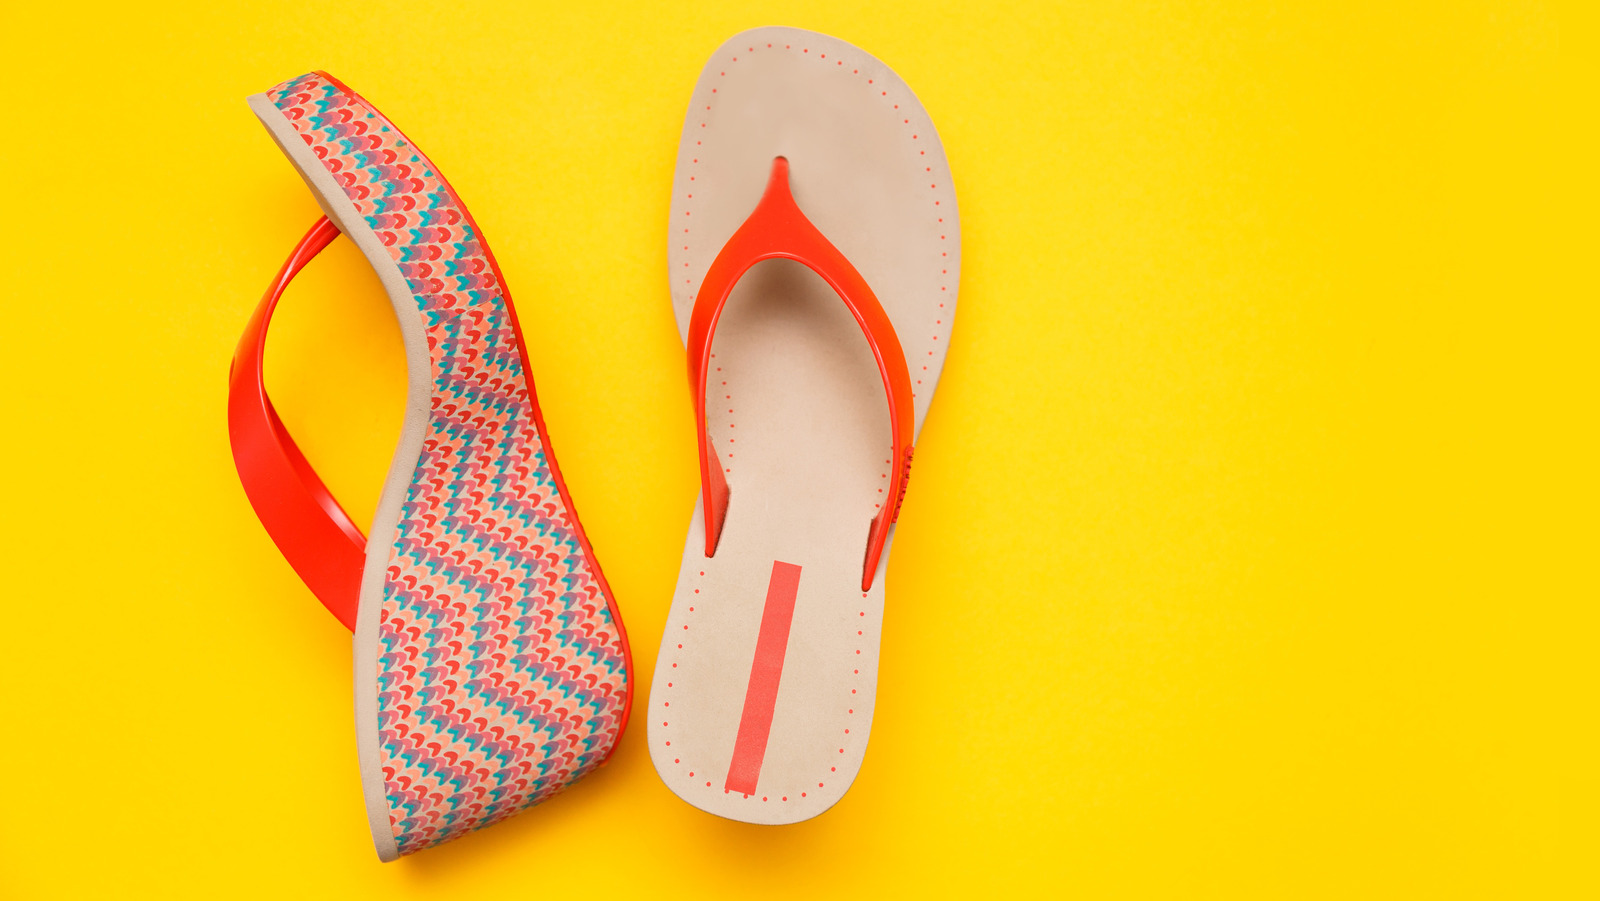 The Top 10 Platform Sandals For Summer